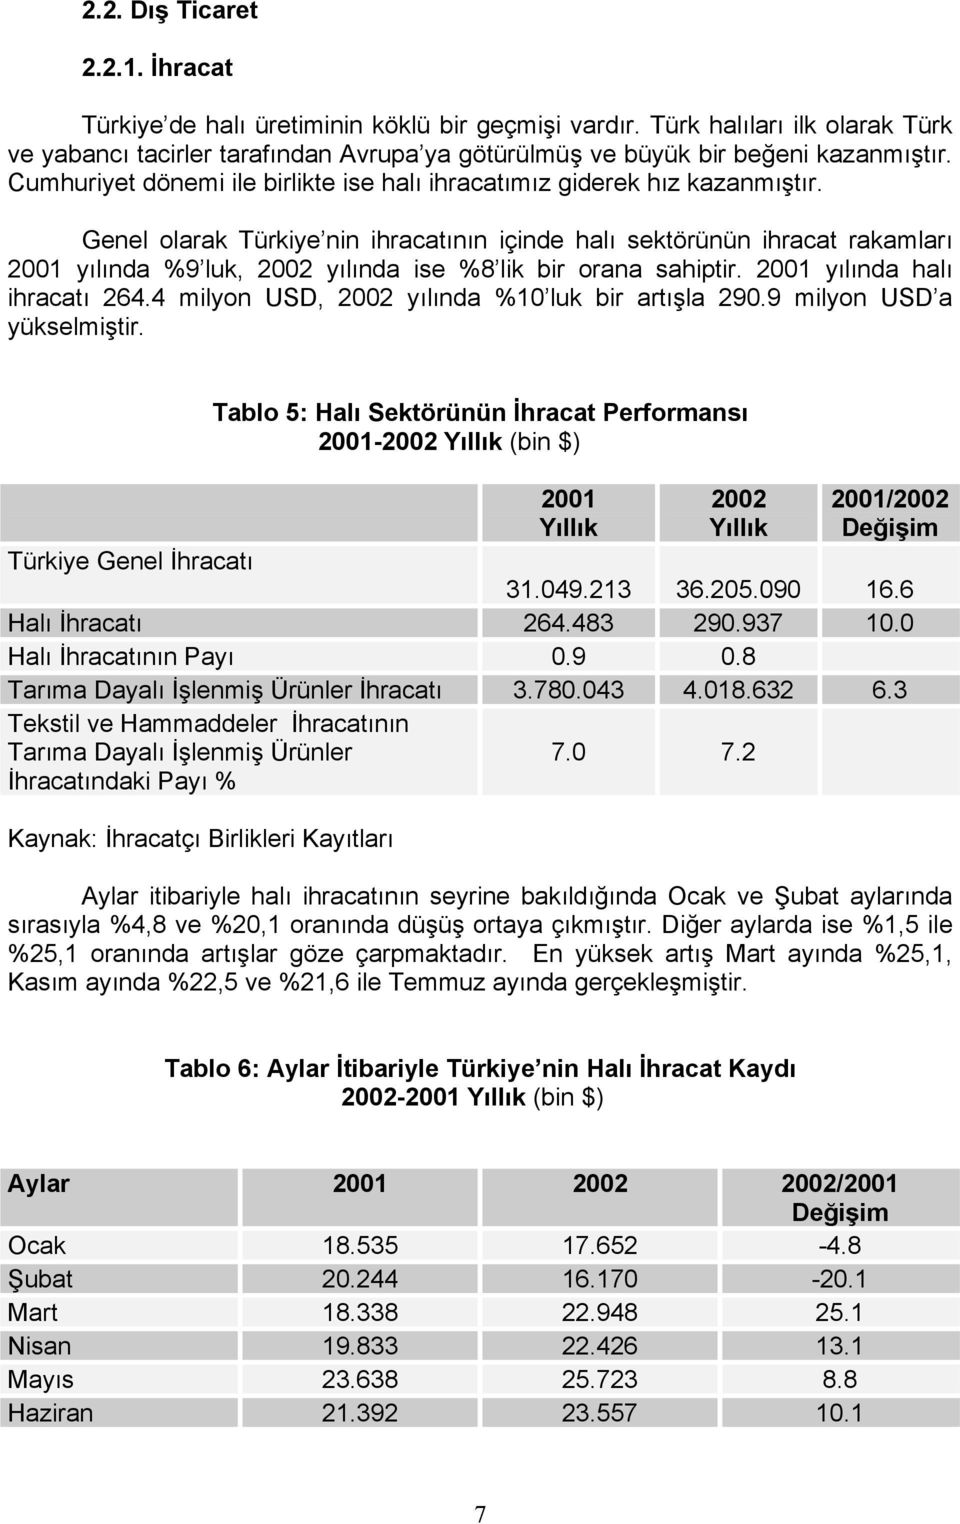 Genel olarak Türkiye nin ihracatının içinde halı sektörünün ihracat rakamları 2001 yılında %9 luk, 2002 yılında ise %8 lik bir orana sahiptir. 2001 yılında halı ihracatı 264.